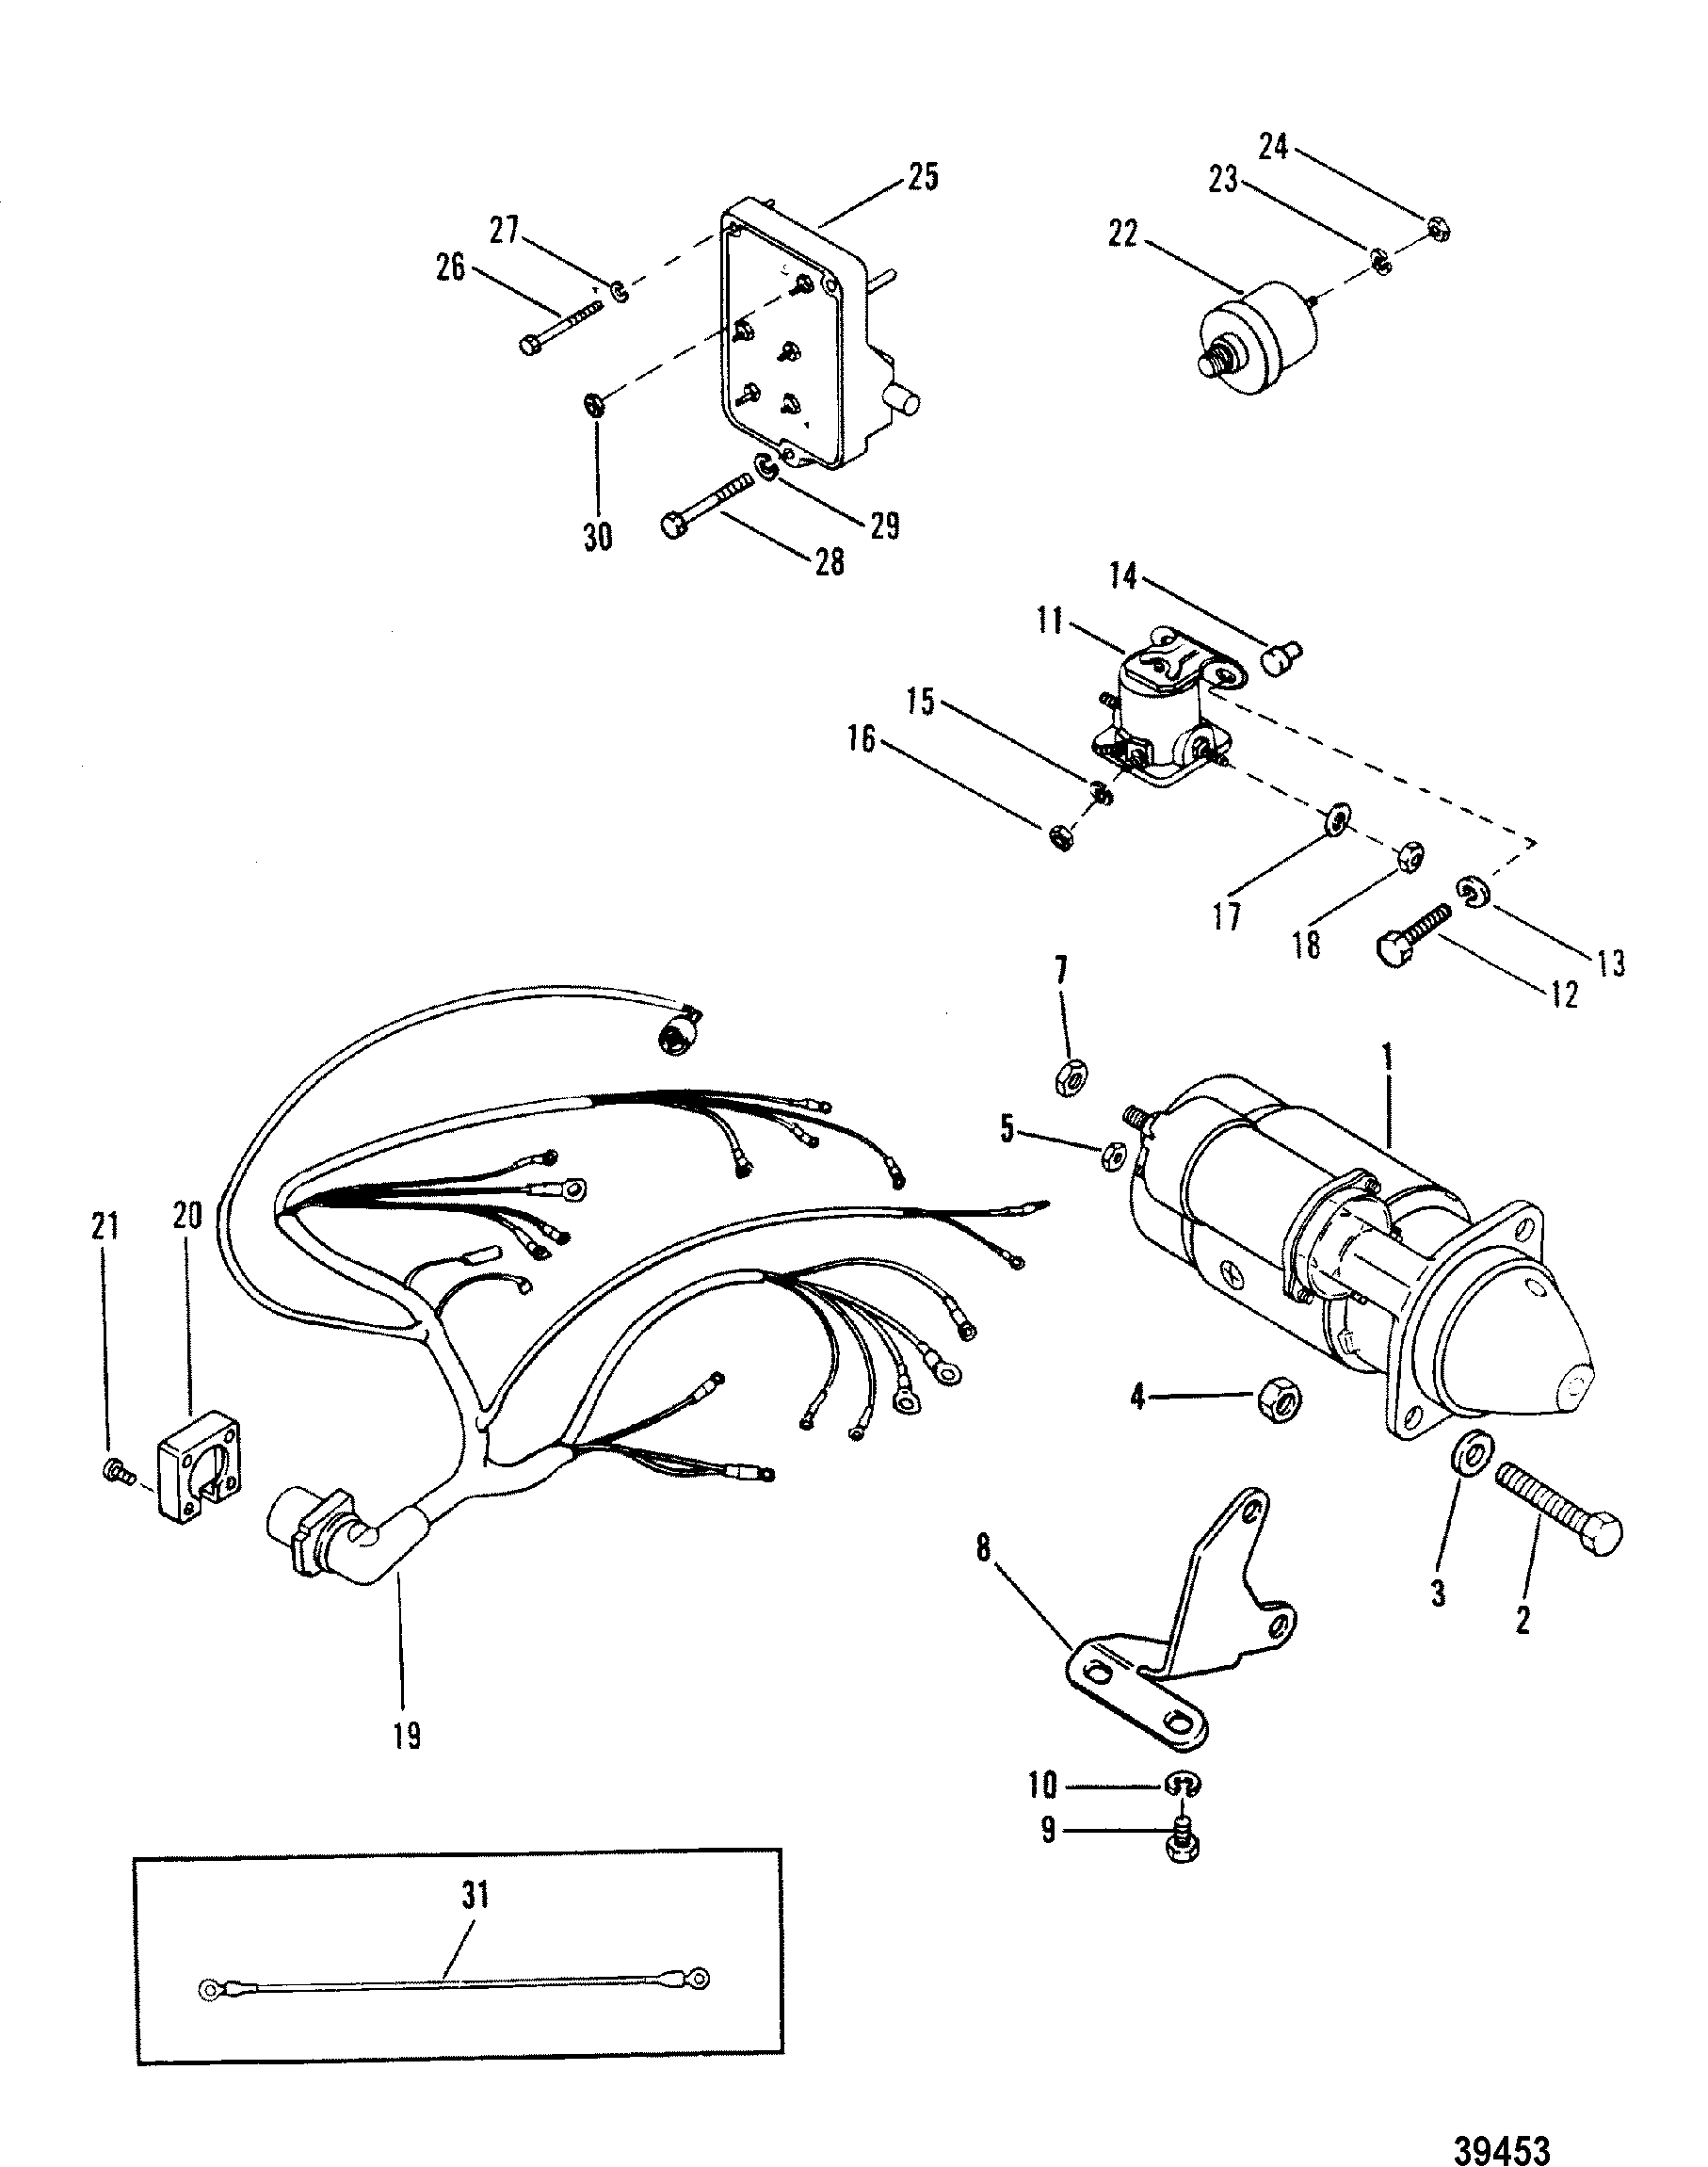 165 Mercruiser Engine Diagram